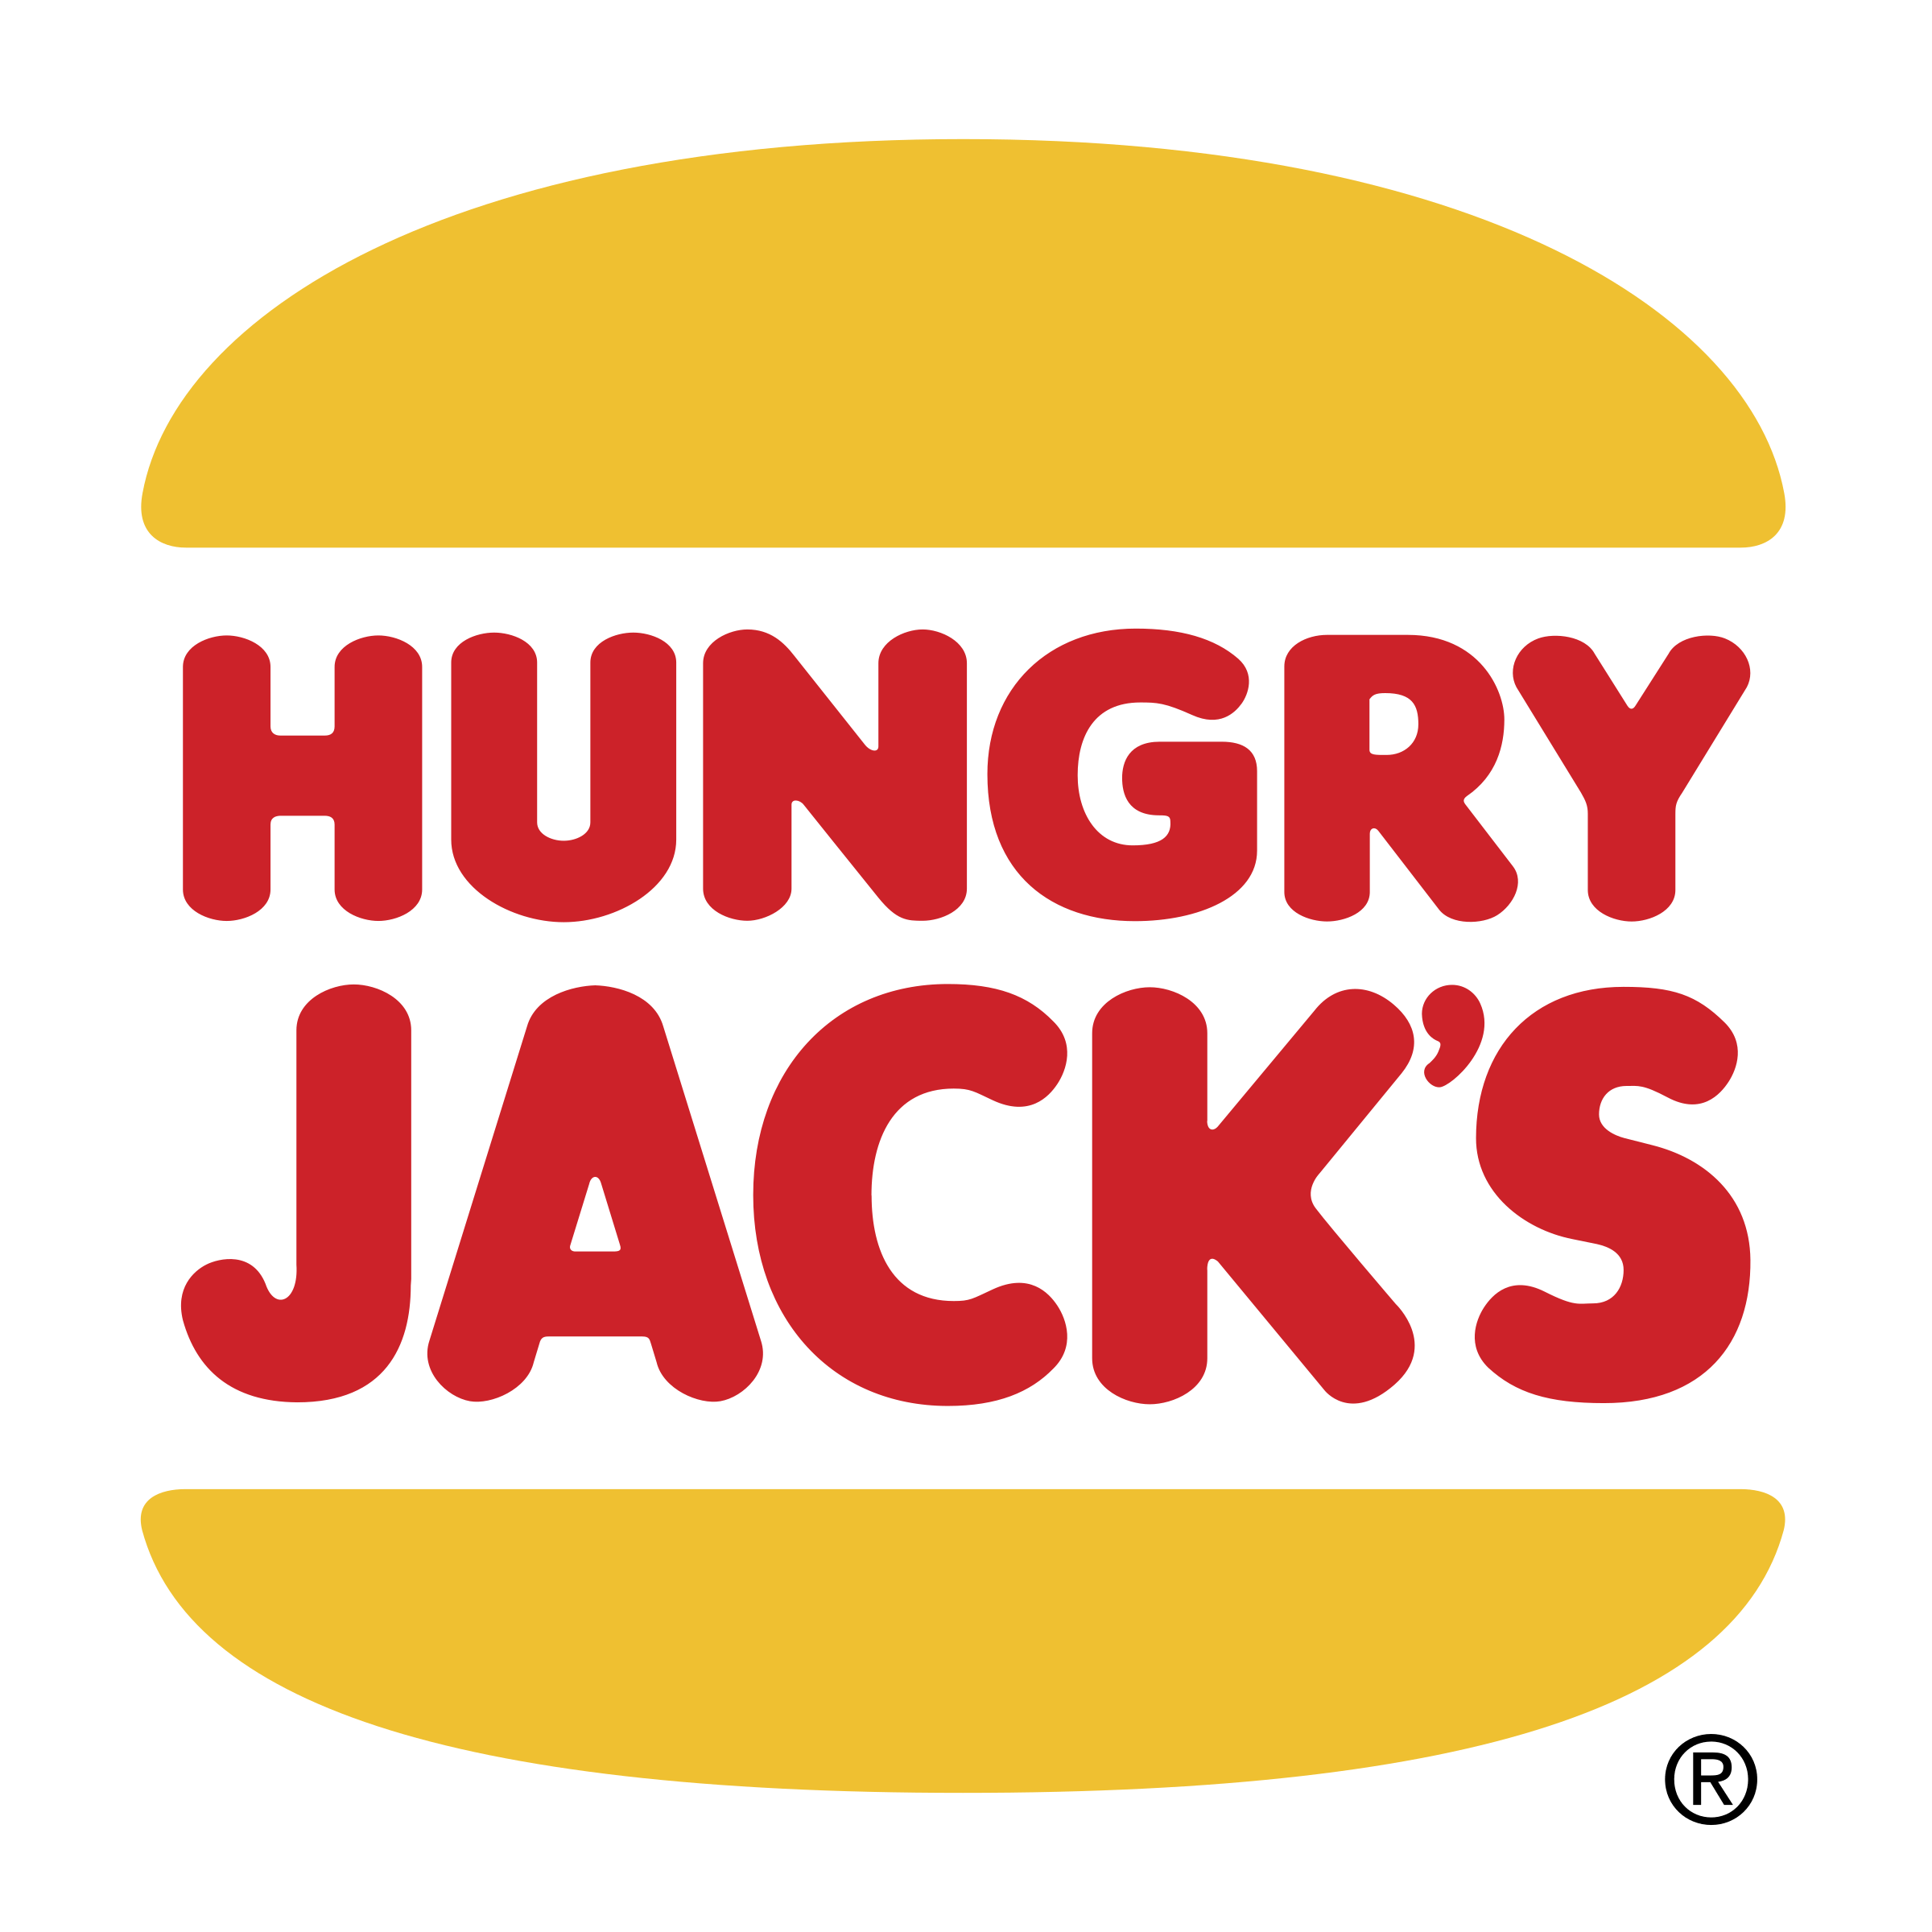 Jack's Logo - Hungry Jack's Logo PNG Transparent & SVG Vector